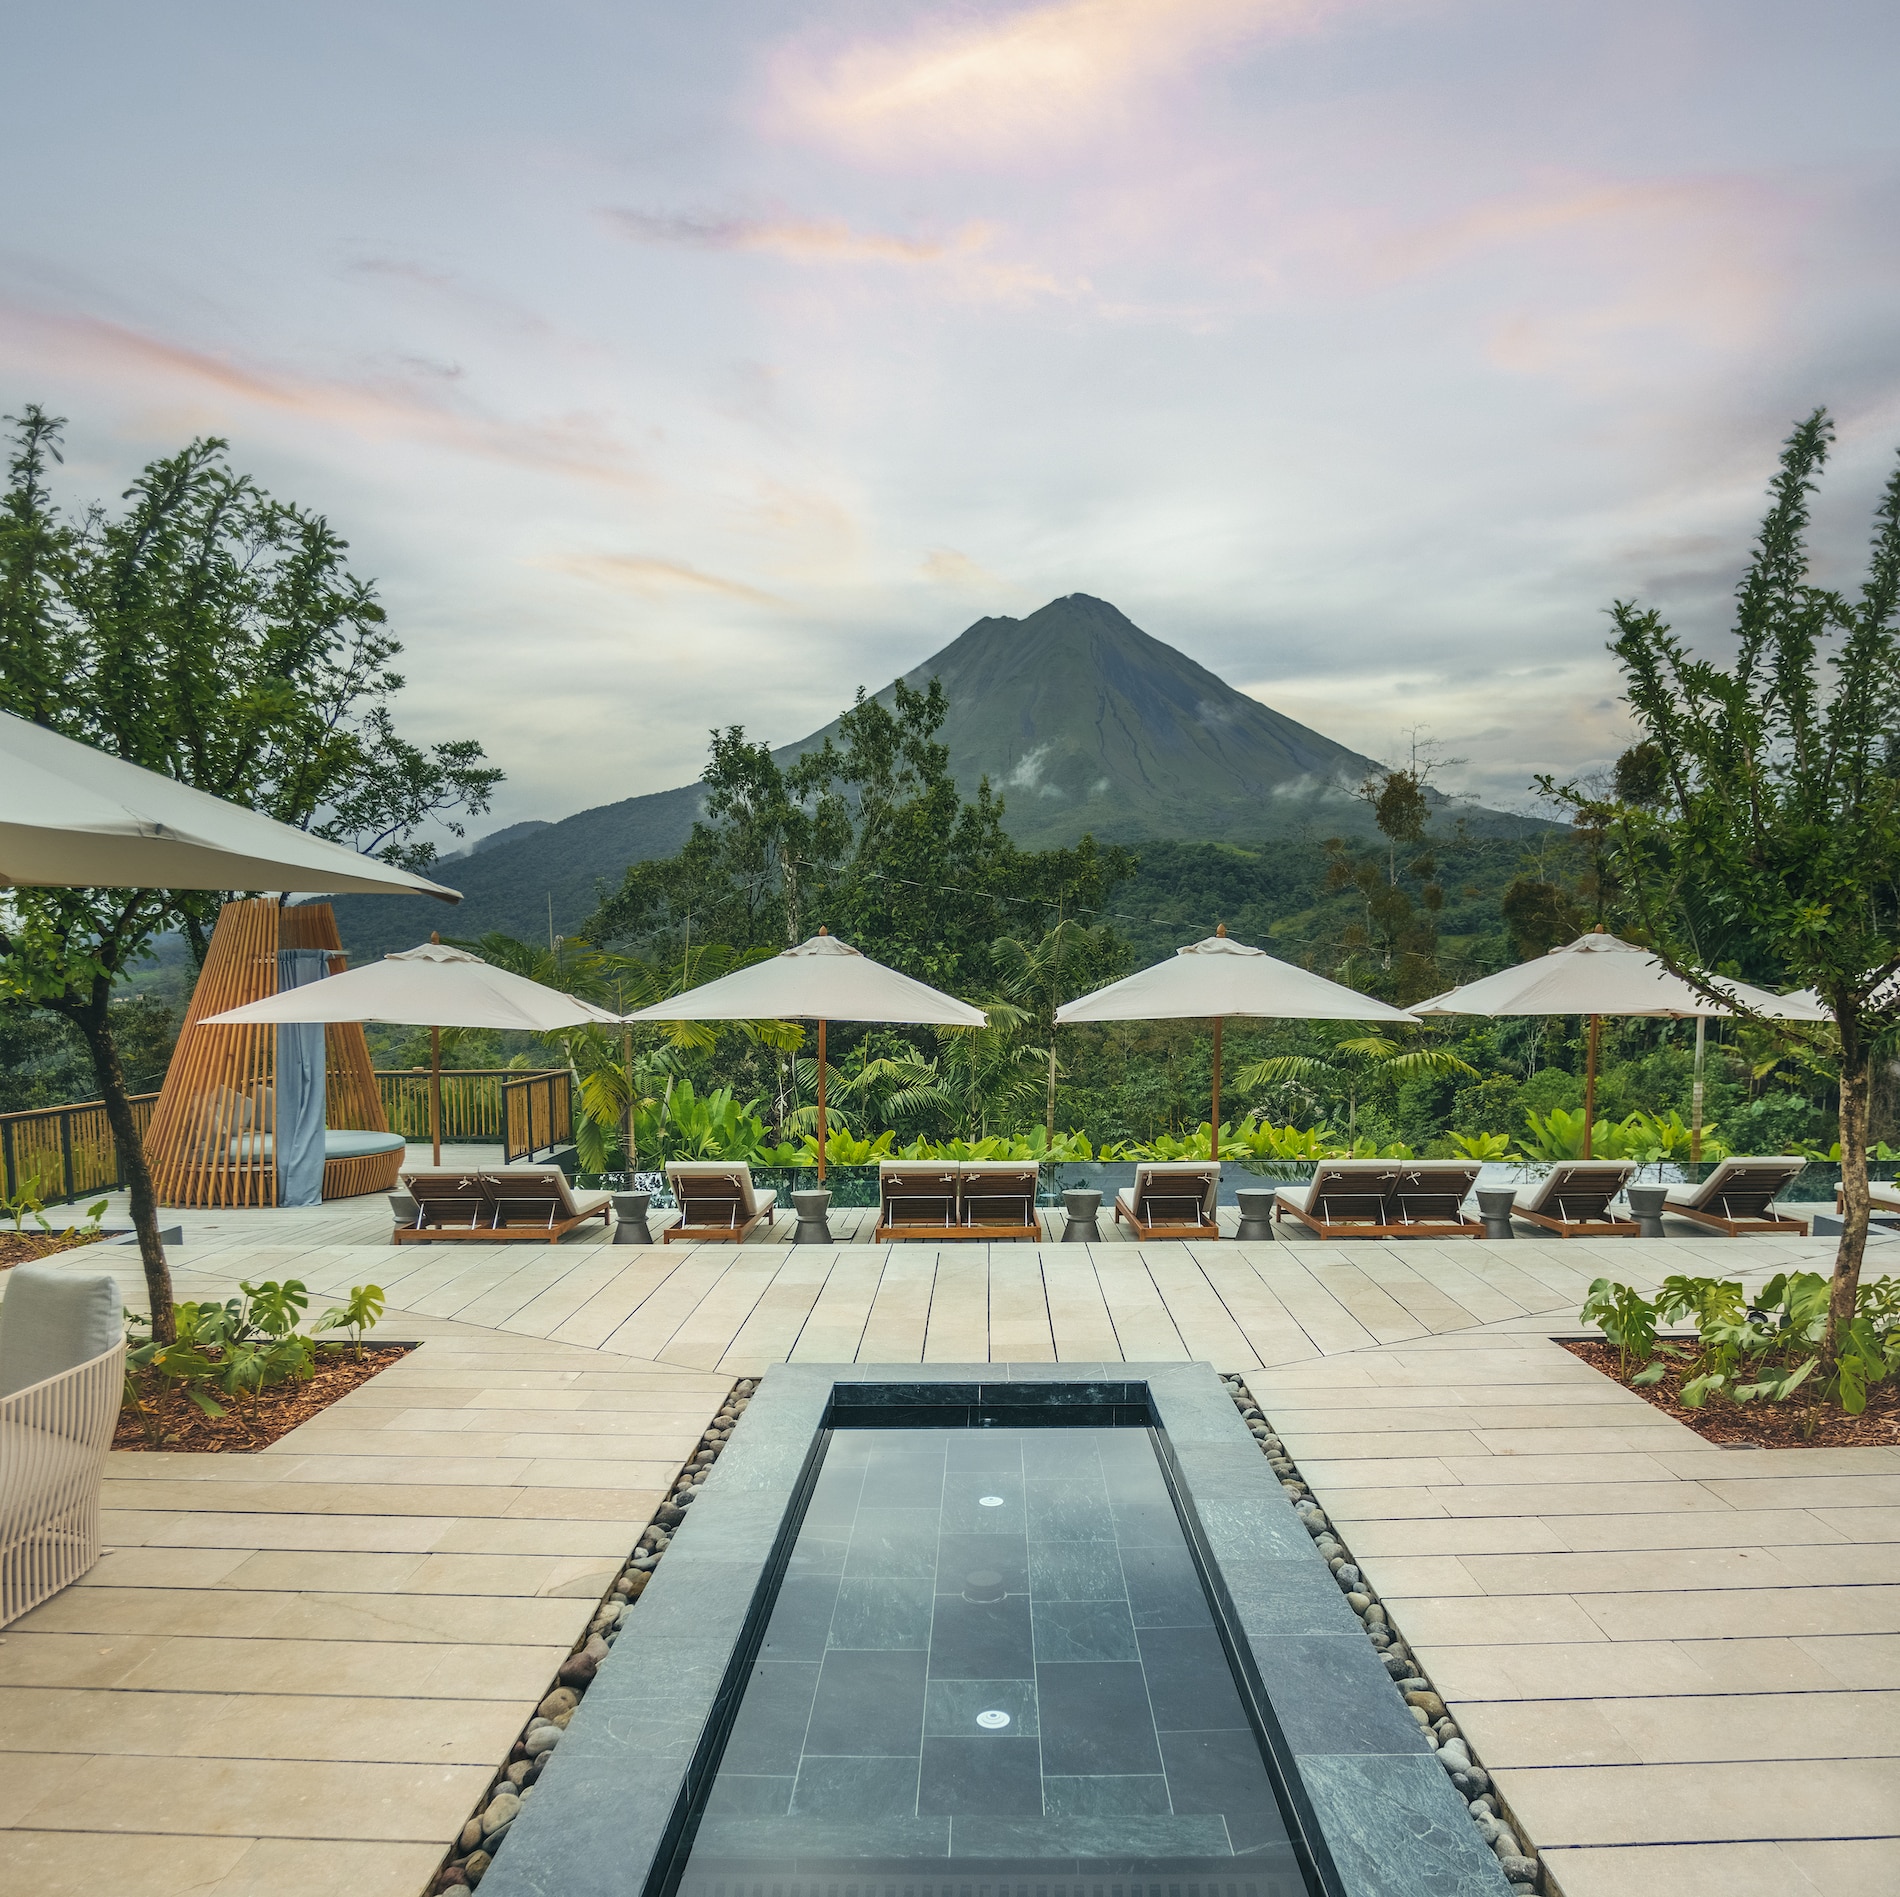 Hoteles Nayara en La Fortuna amplían operación en Costa Rica y generan 50 empleos directos